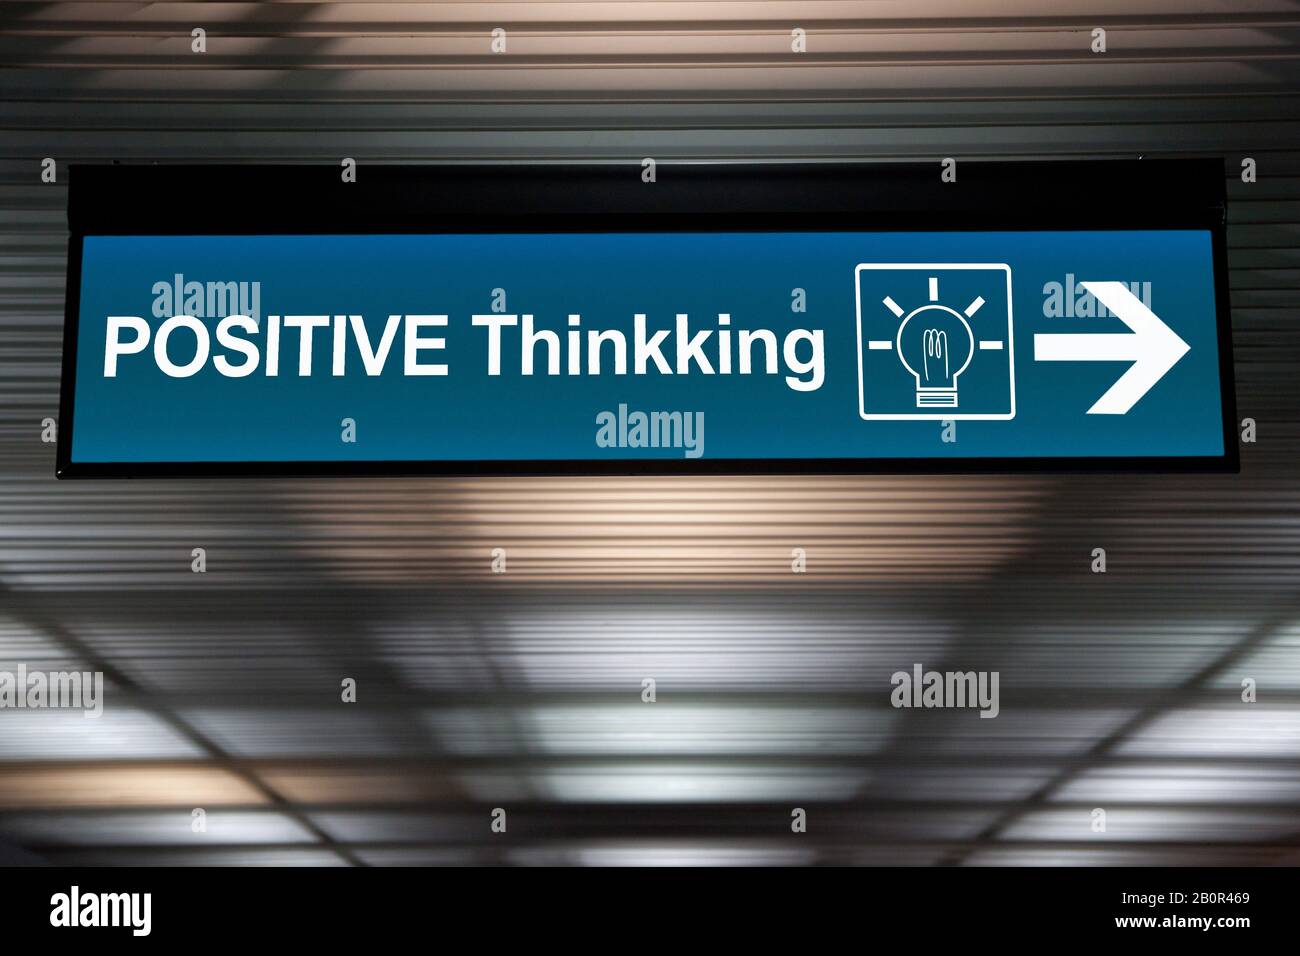 Denken Sie an ein positives Konzept. Unterschreiben Sie positives Denken mit dem Symbol für die Glühbirne und dem Pfeil für die Richtung. Stockfoto